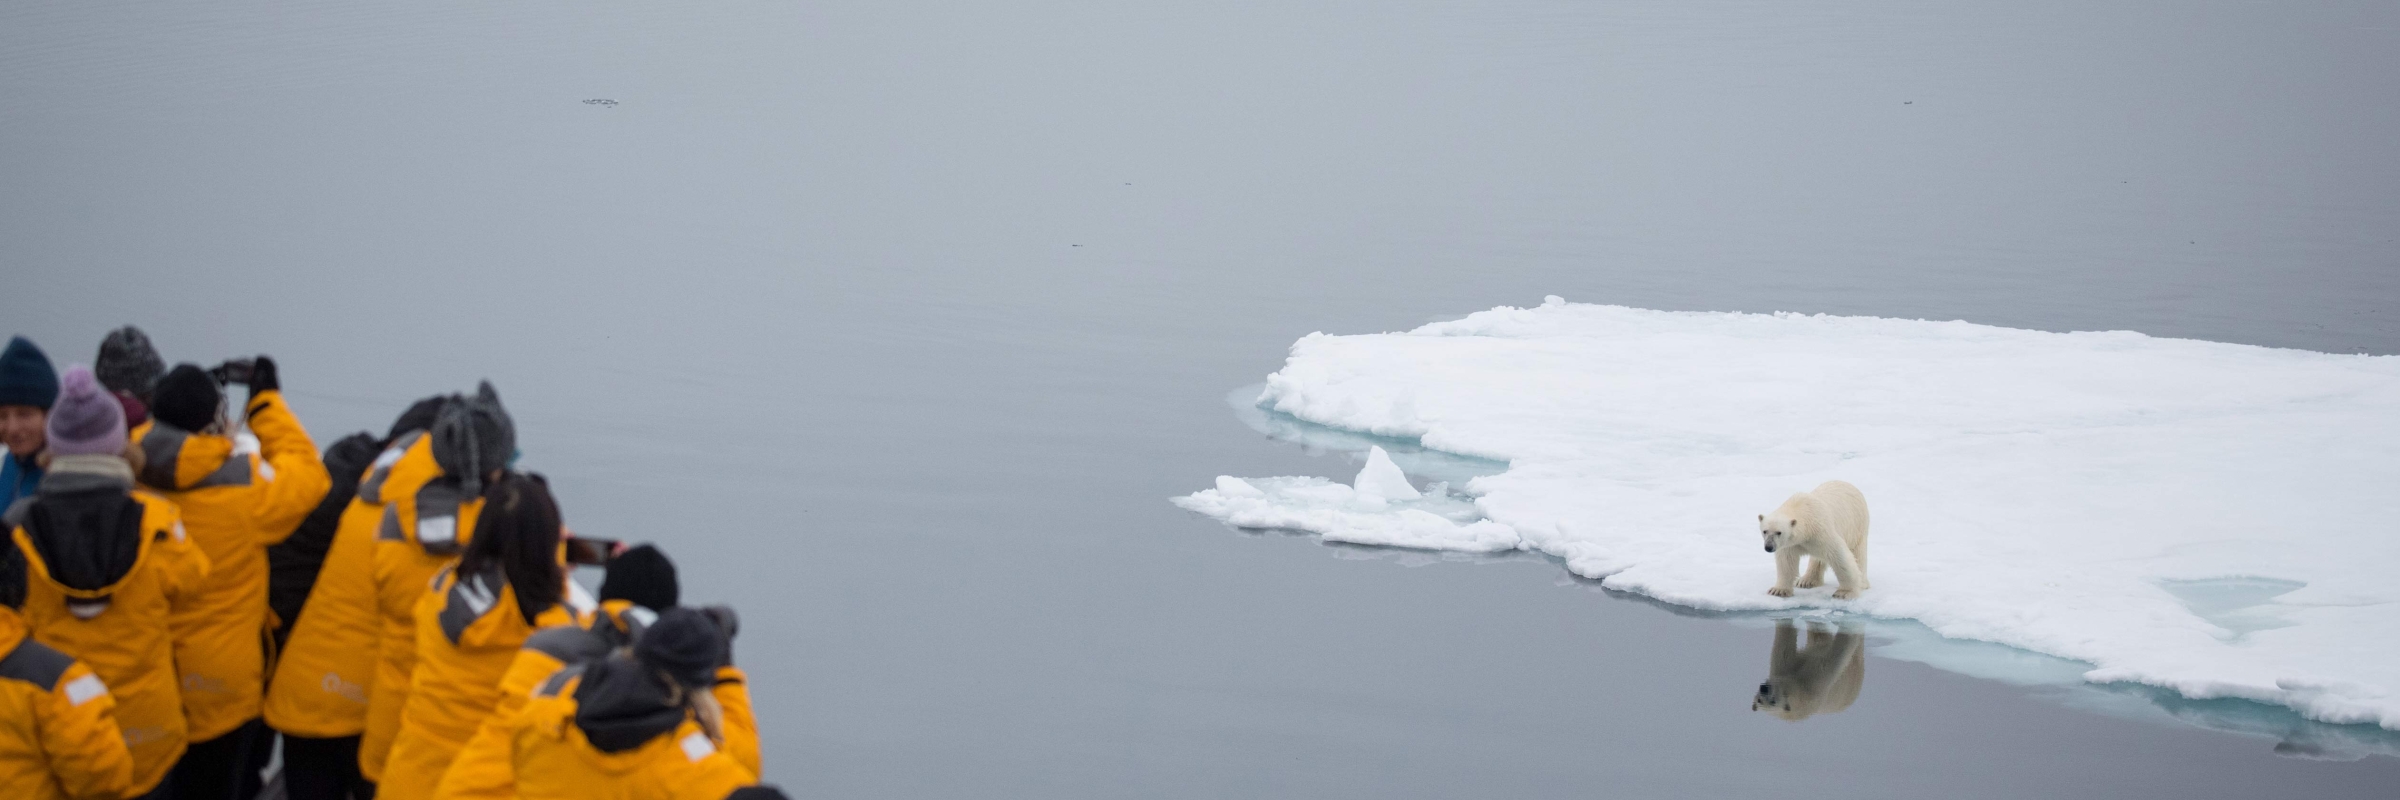 Polar bear on sea ice